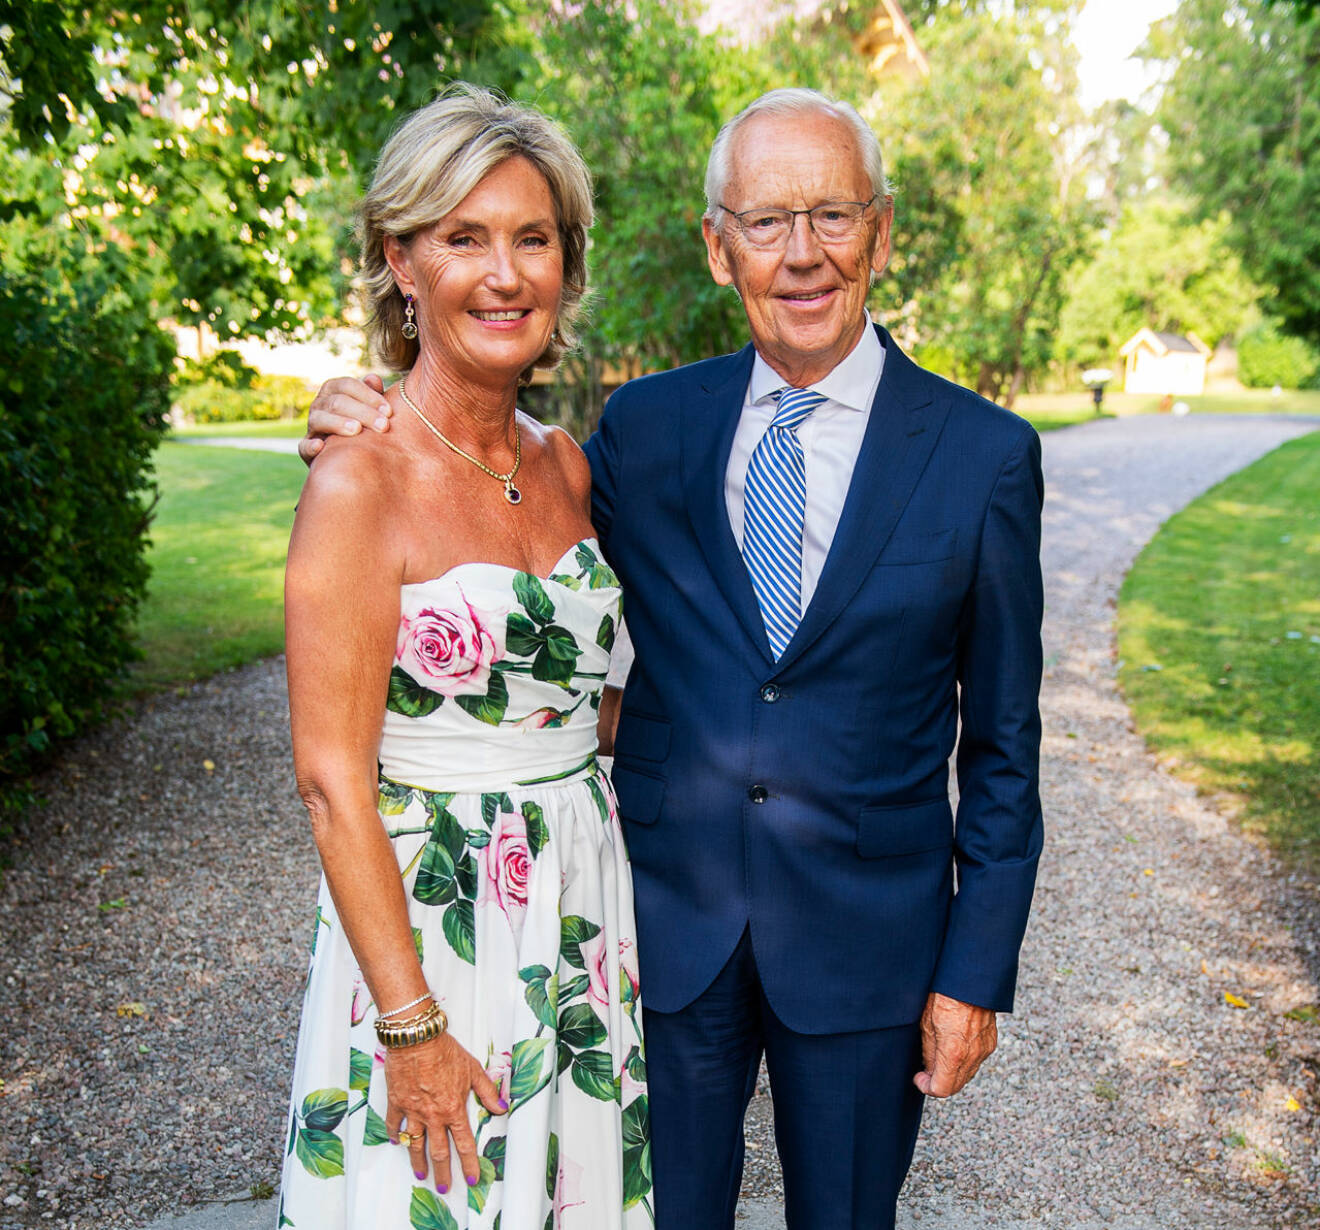 Hans Eric ”Jeje” och Eva Benita ”Putzi” Brodin, tidigare ägare till Villa Loviseberg som nu köpts av Statens Fastighetsverk